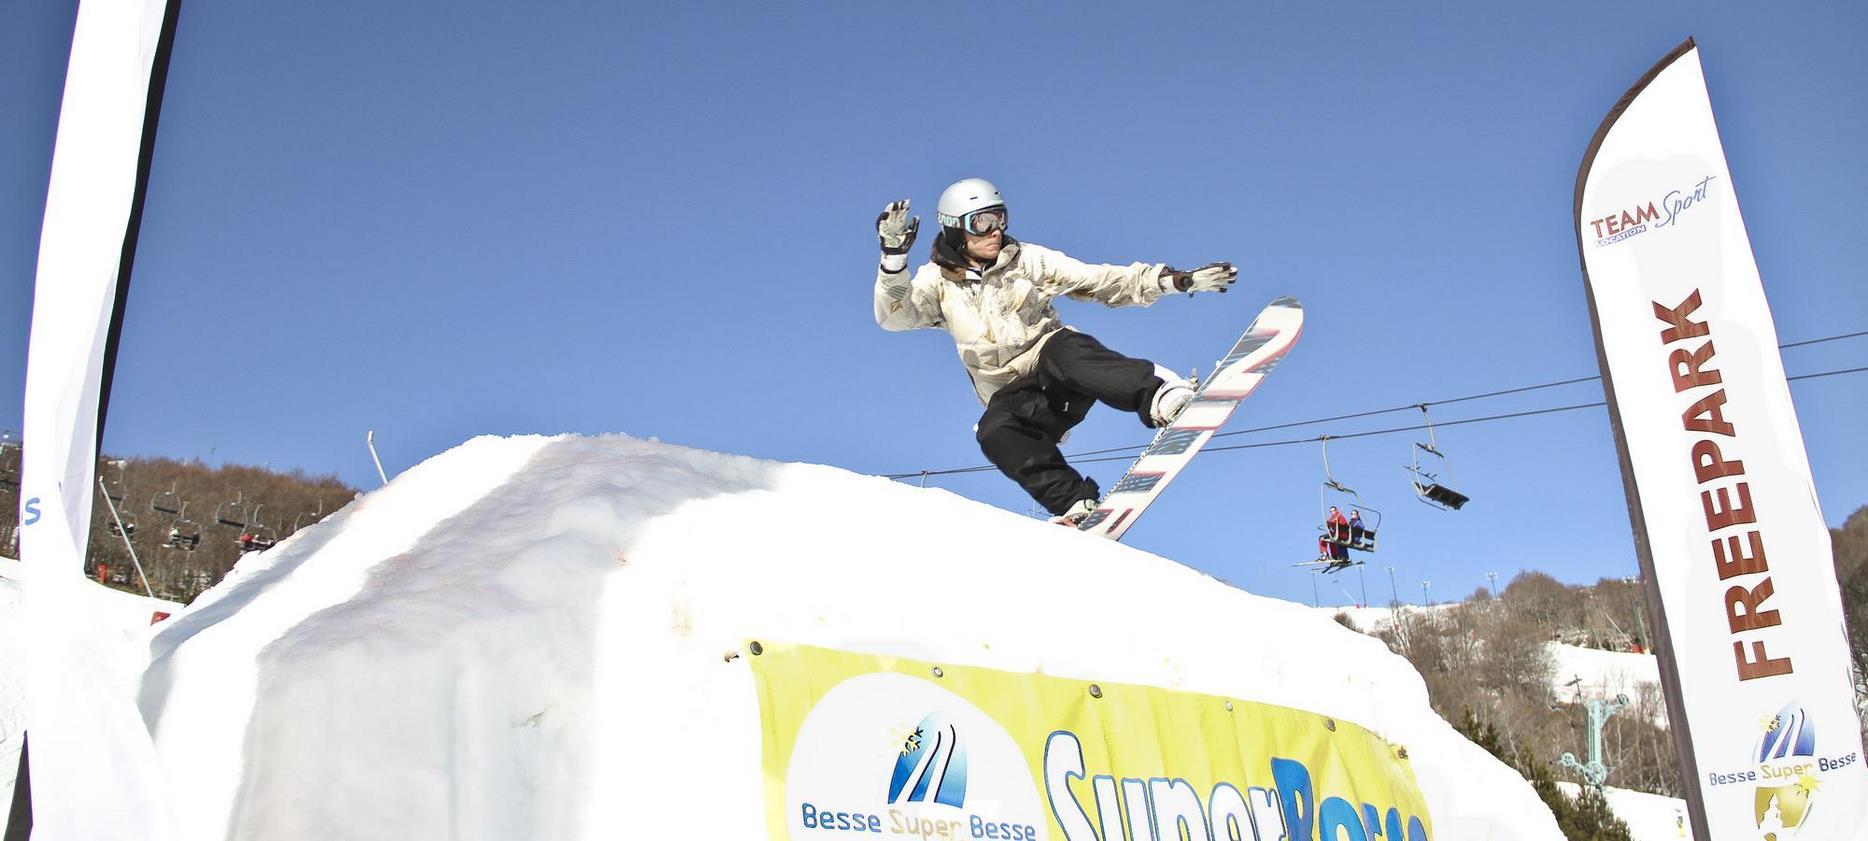 Super Besse - Competition de snowboard a Super Besse